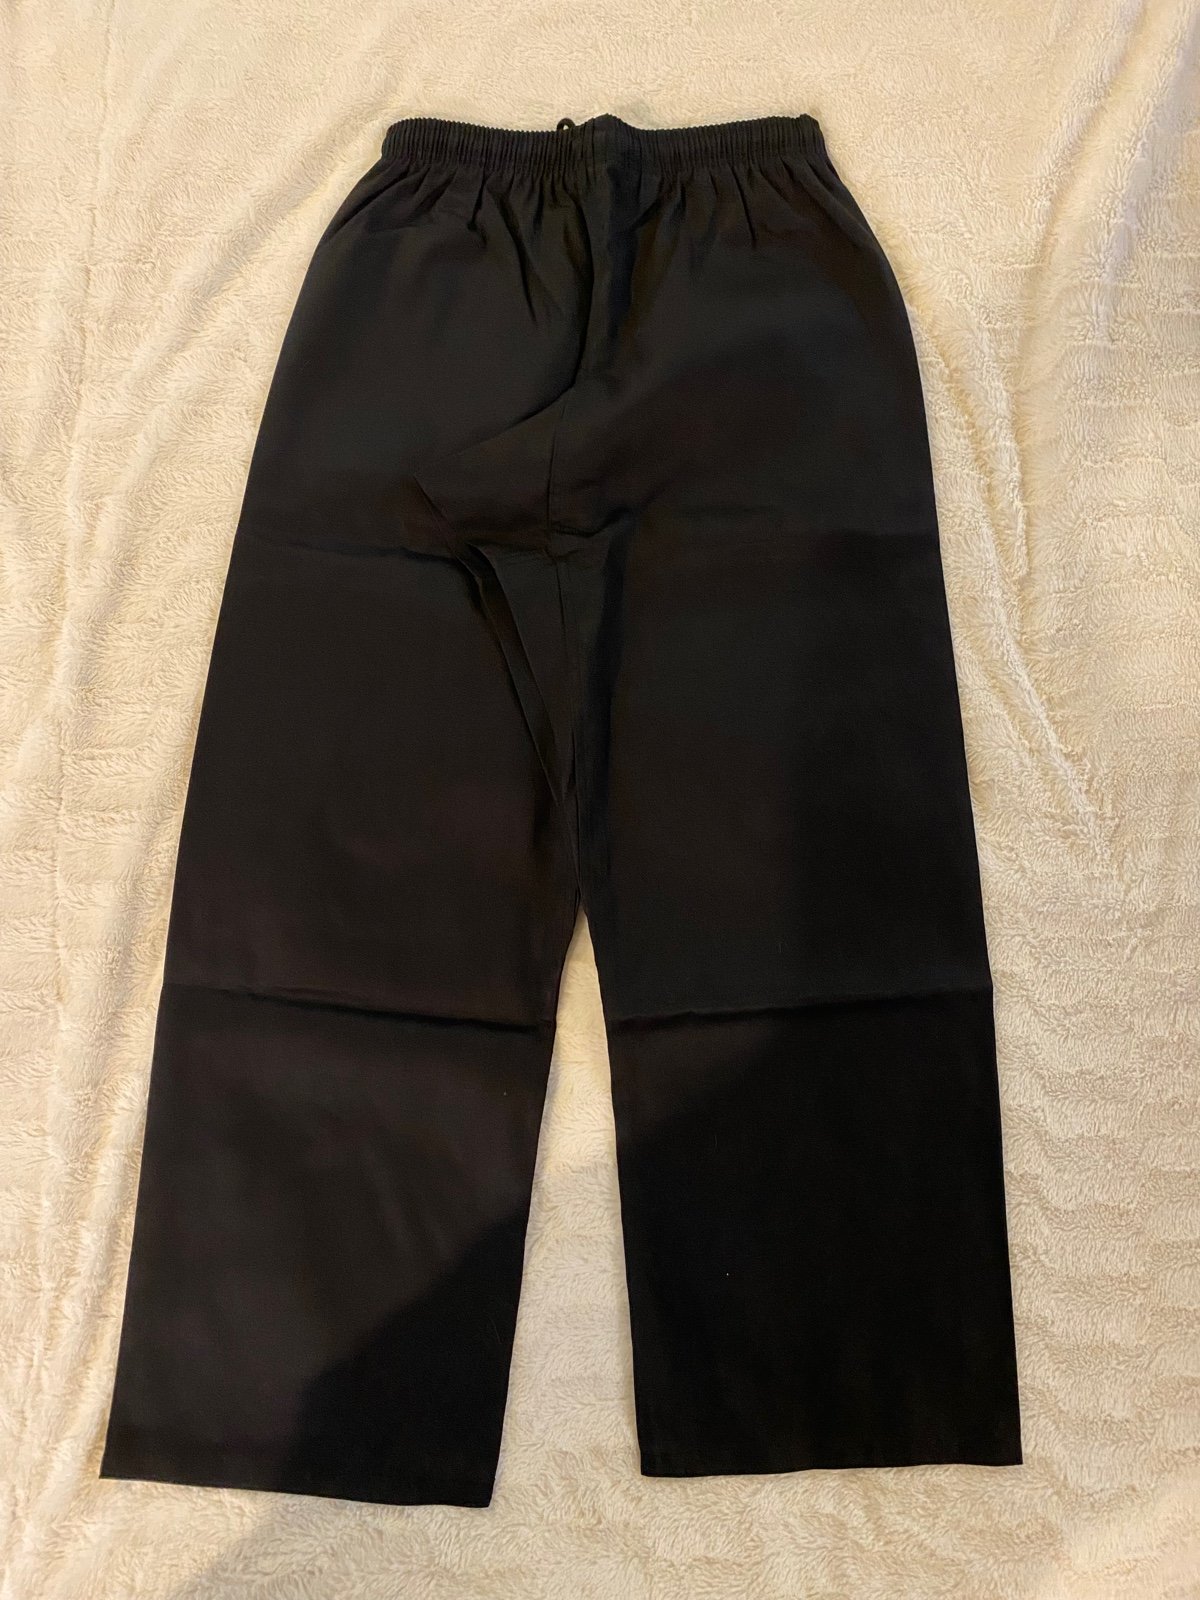 Century Martial Arts Uniform Pants, Size: 4 c187eNsIQ